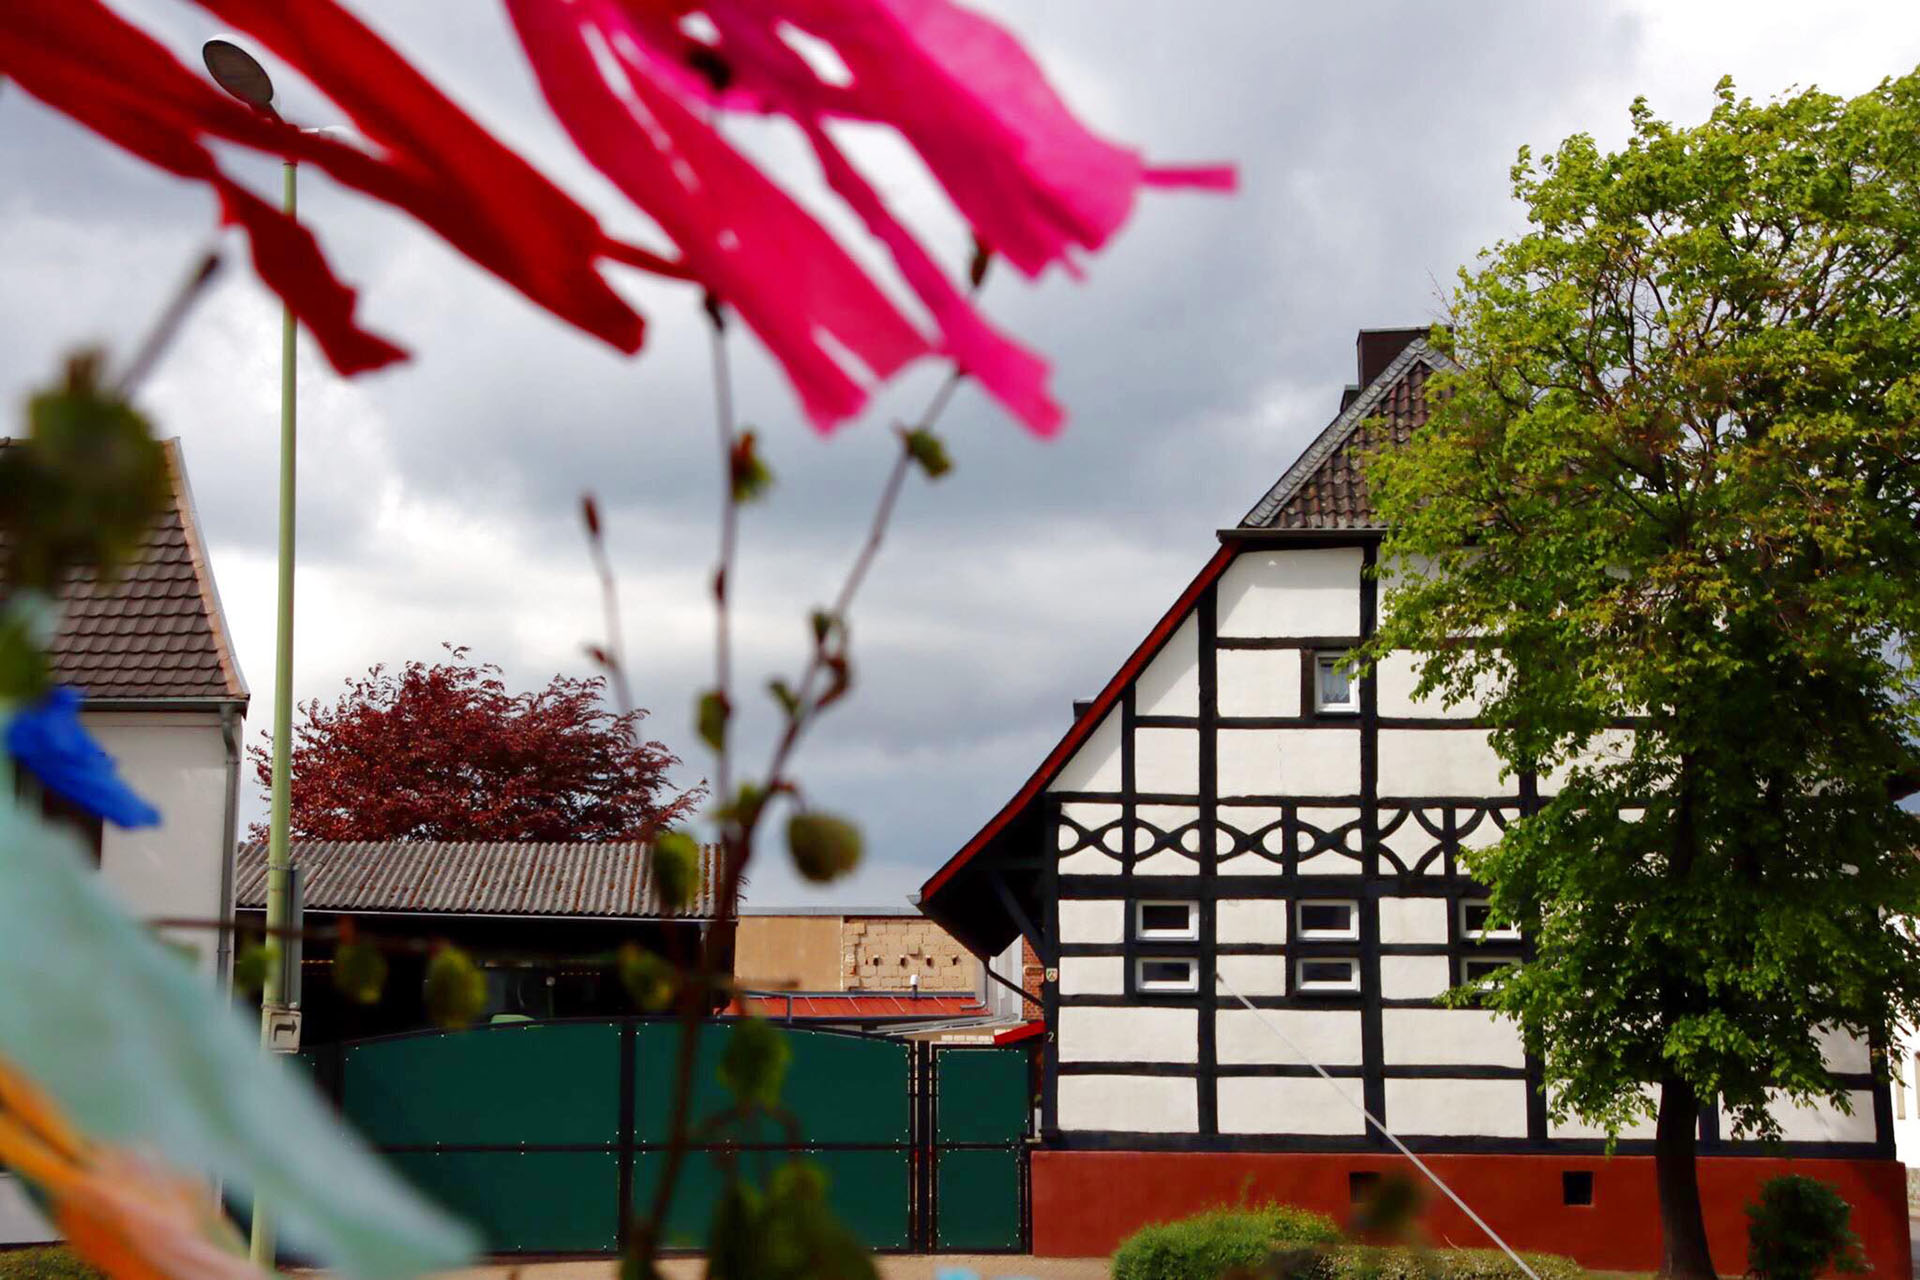 Das Bild zeigt einen alten, stillgelegtnr Bauernhof im Fachwerkhaus-Stil im Stadtteil Arnoldsweiler.